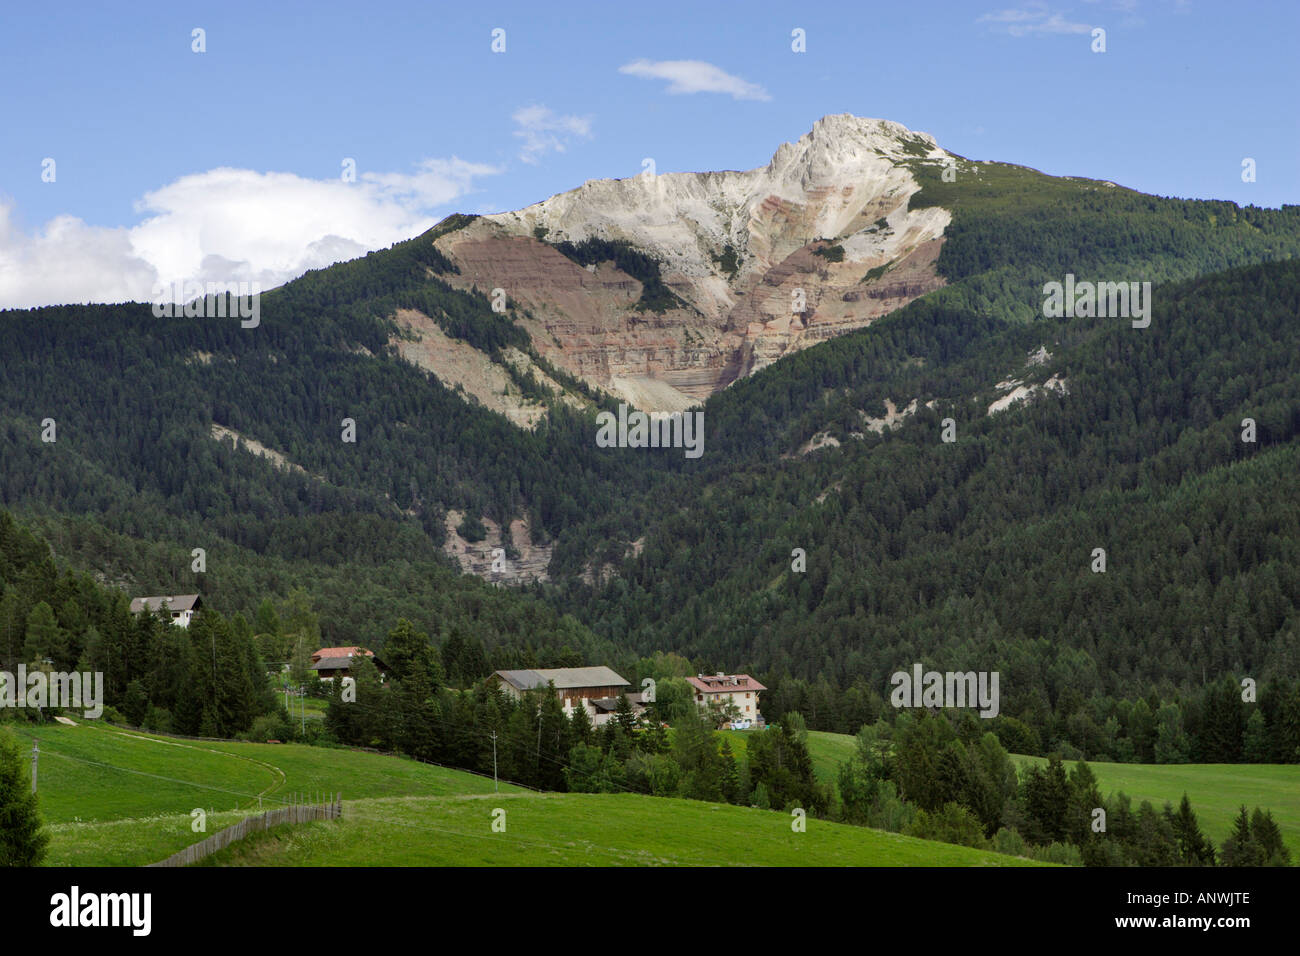 Weißhorn (2316m), Geoparc Bletterbach, Aldein-Radein, South Tyrol Italy Stock Photo